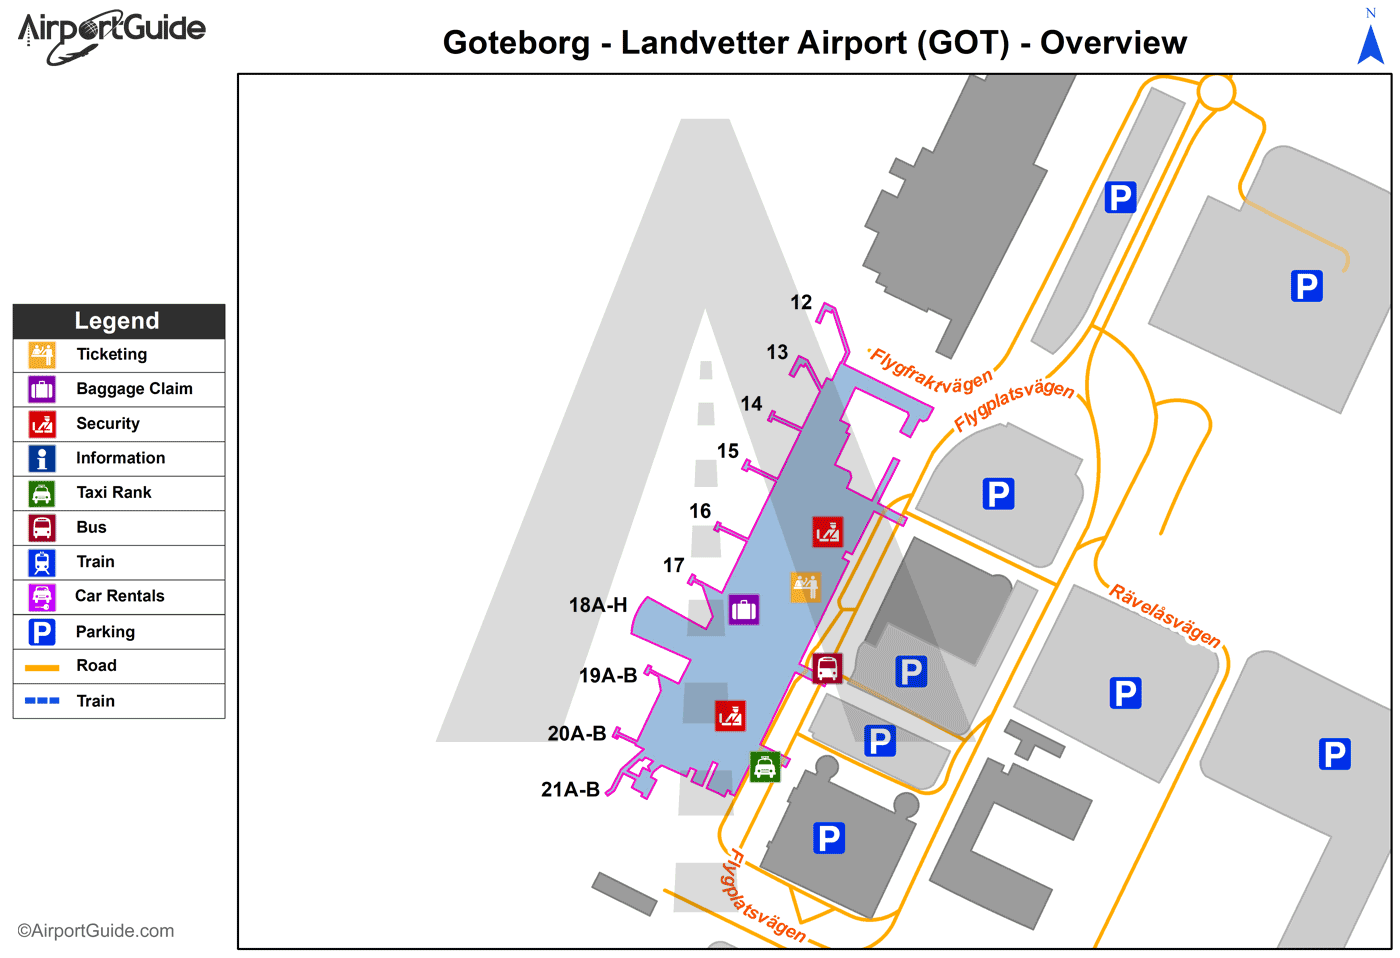 Gothenburg - Gothenburg-Landvetter (GOT) Airport Terminal Map - Overview